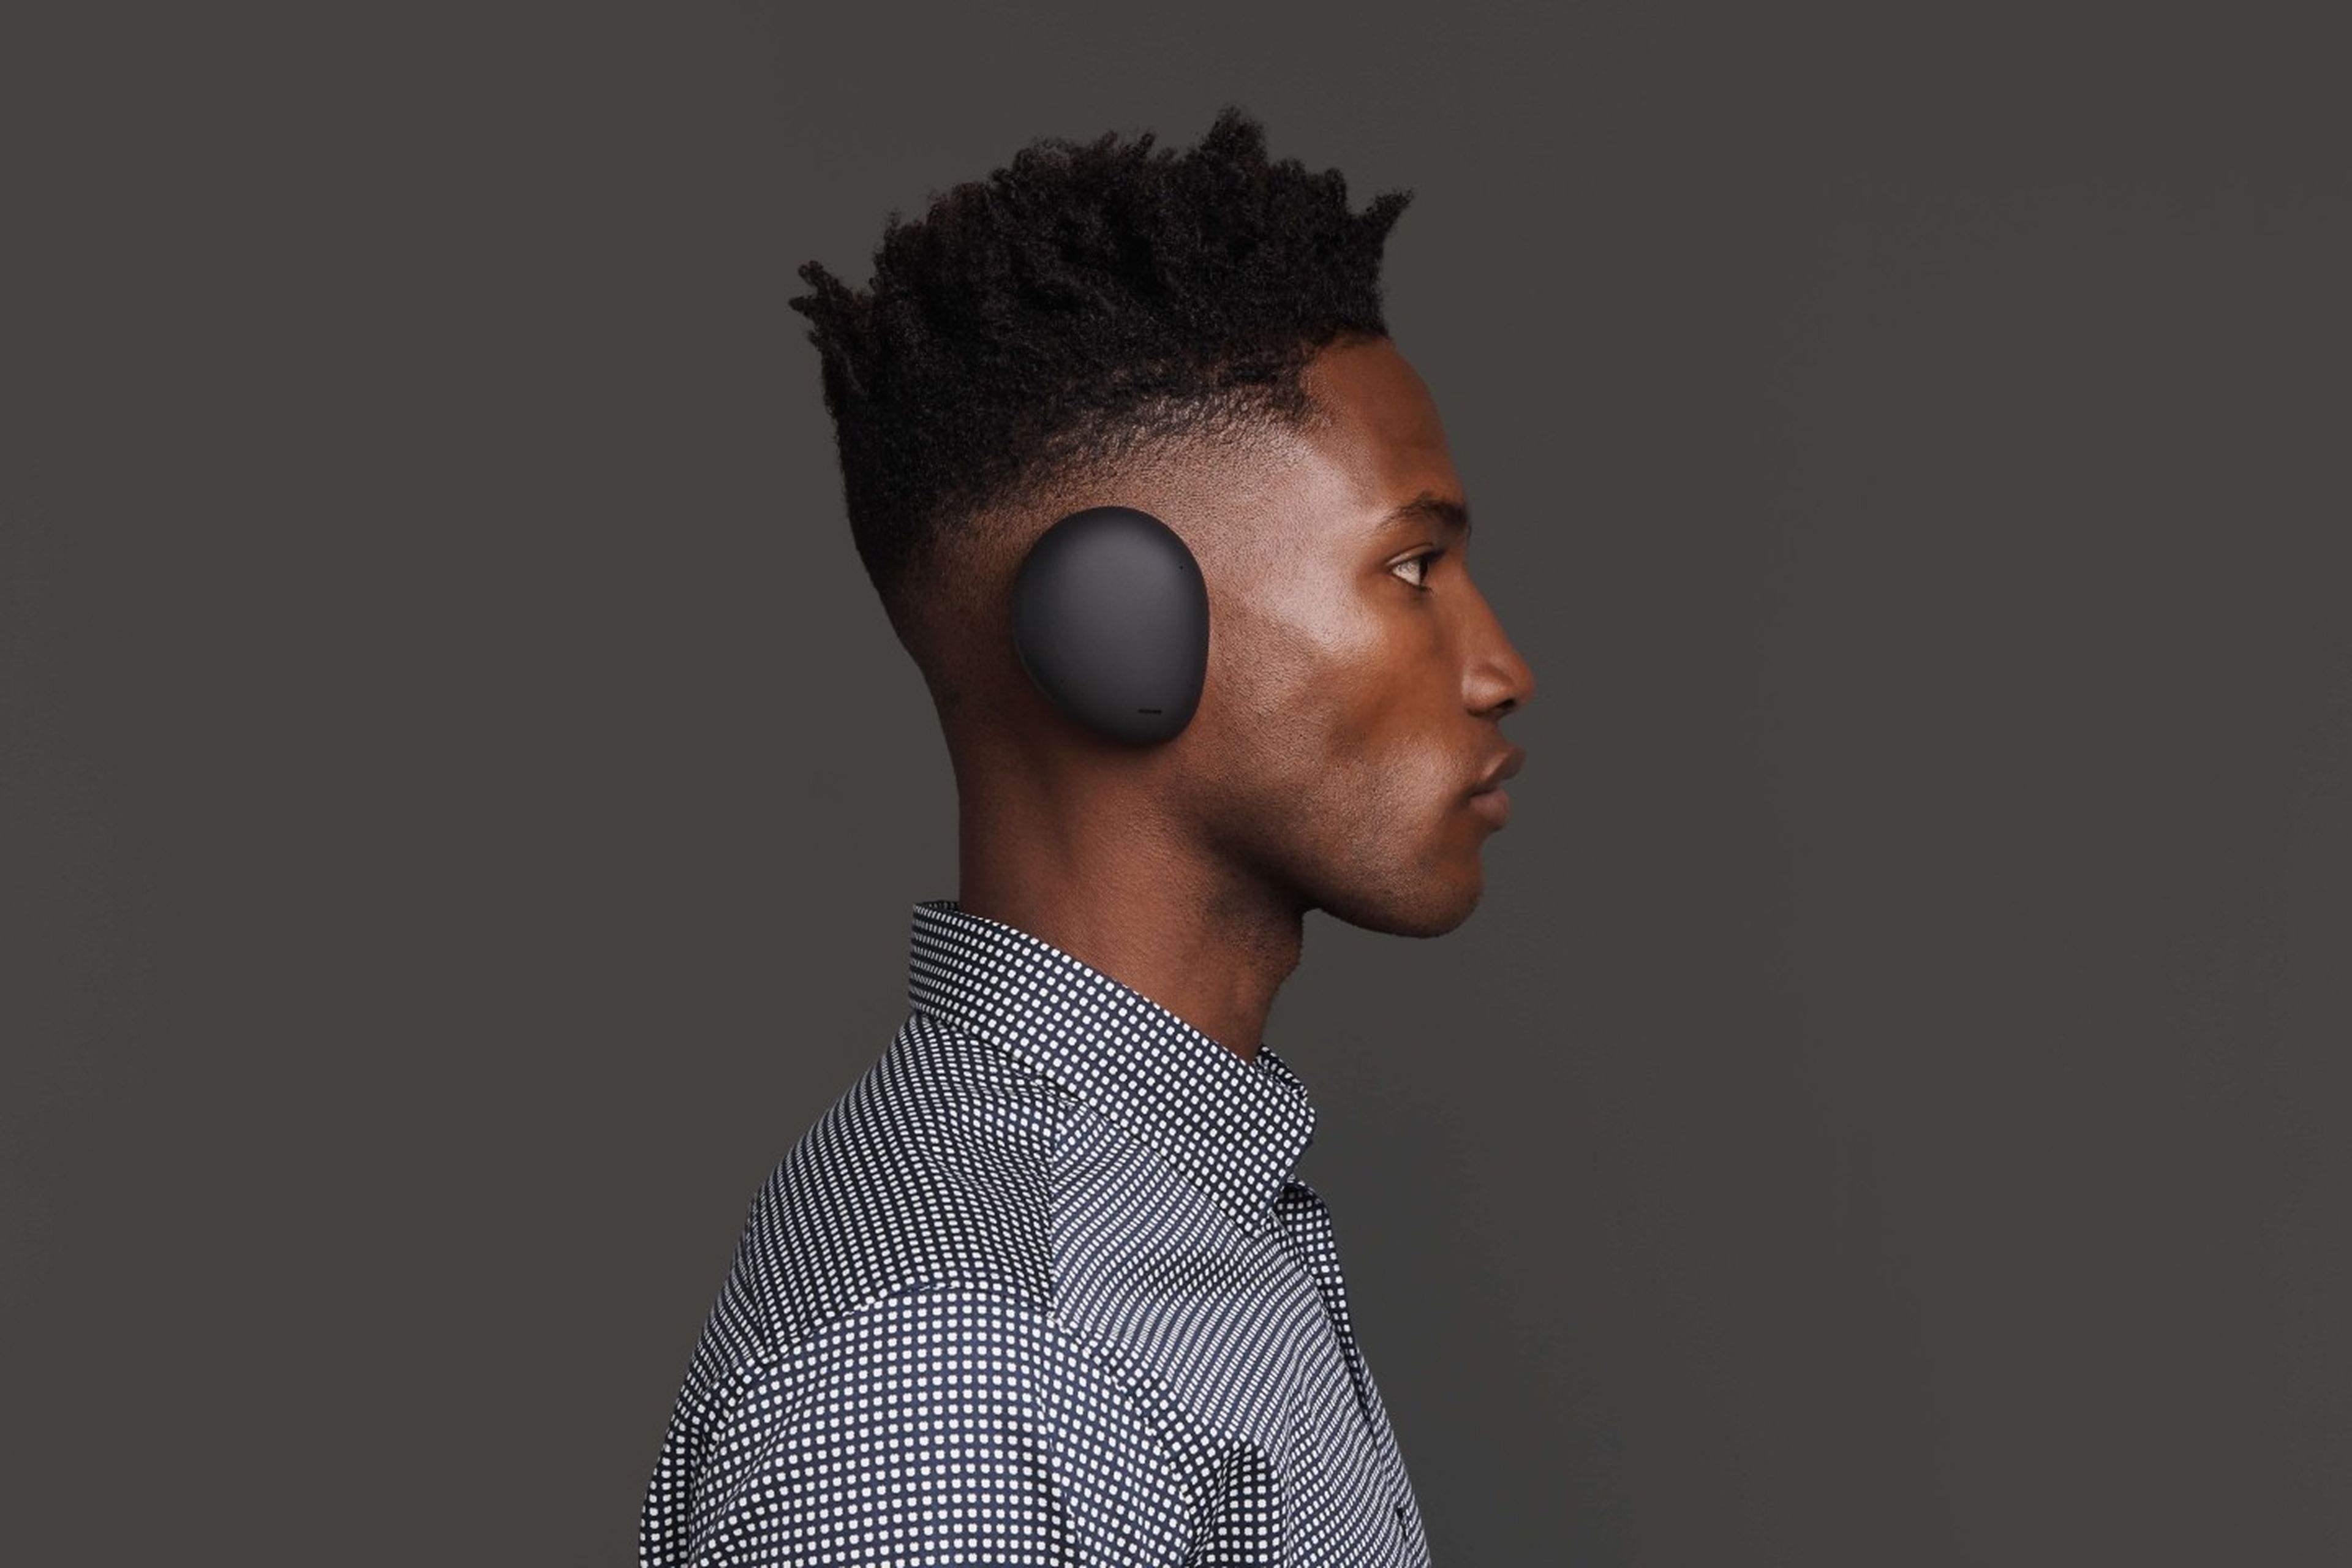 Human Headphones, los auriculares externos sin headband que se transforman en altavoces